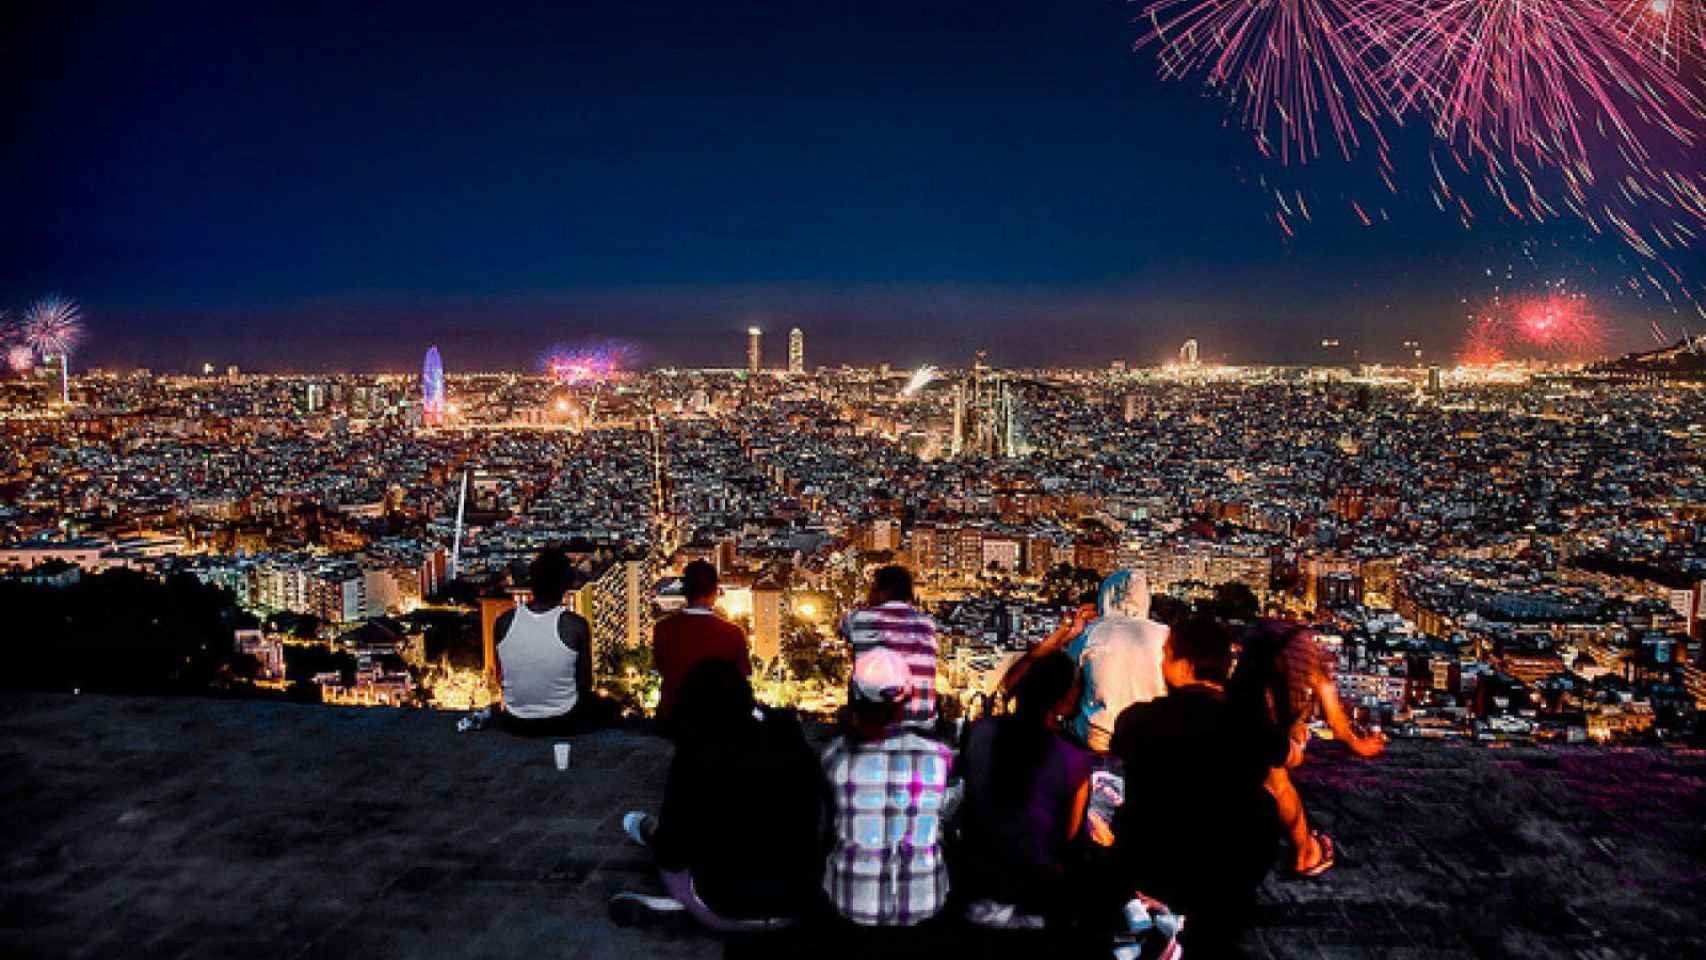 Vista panorámica de Barcelona con calles iluminadas y fuegos artificiales